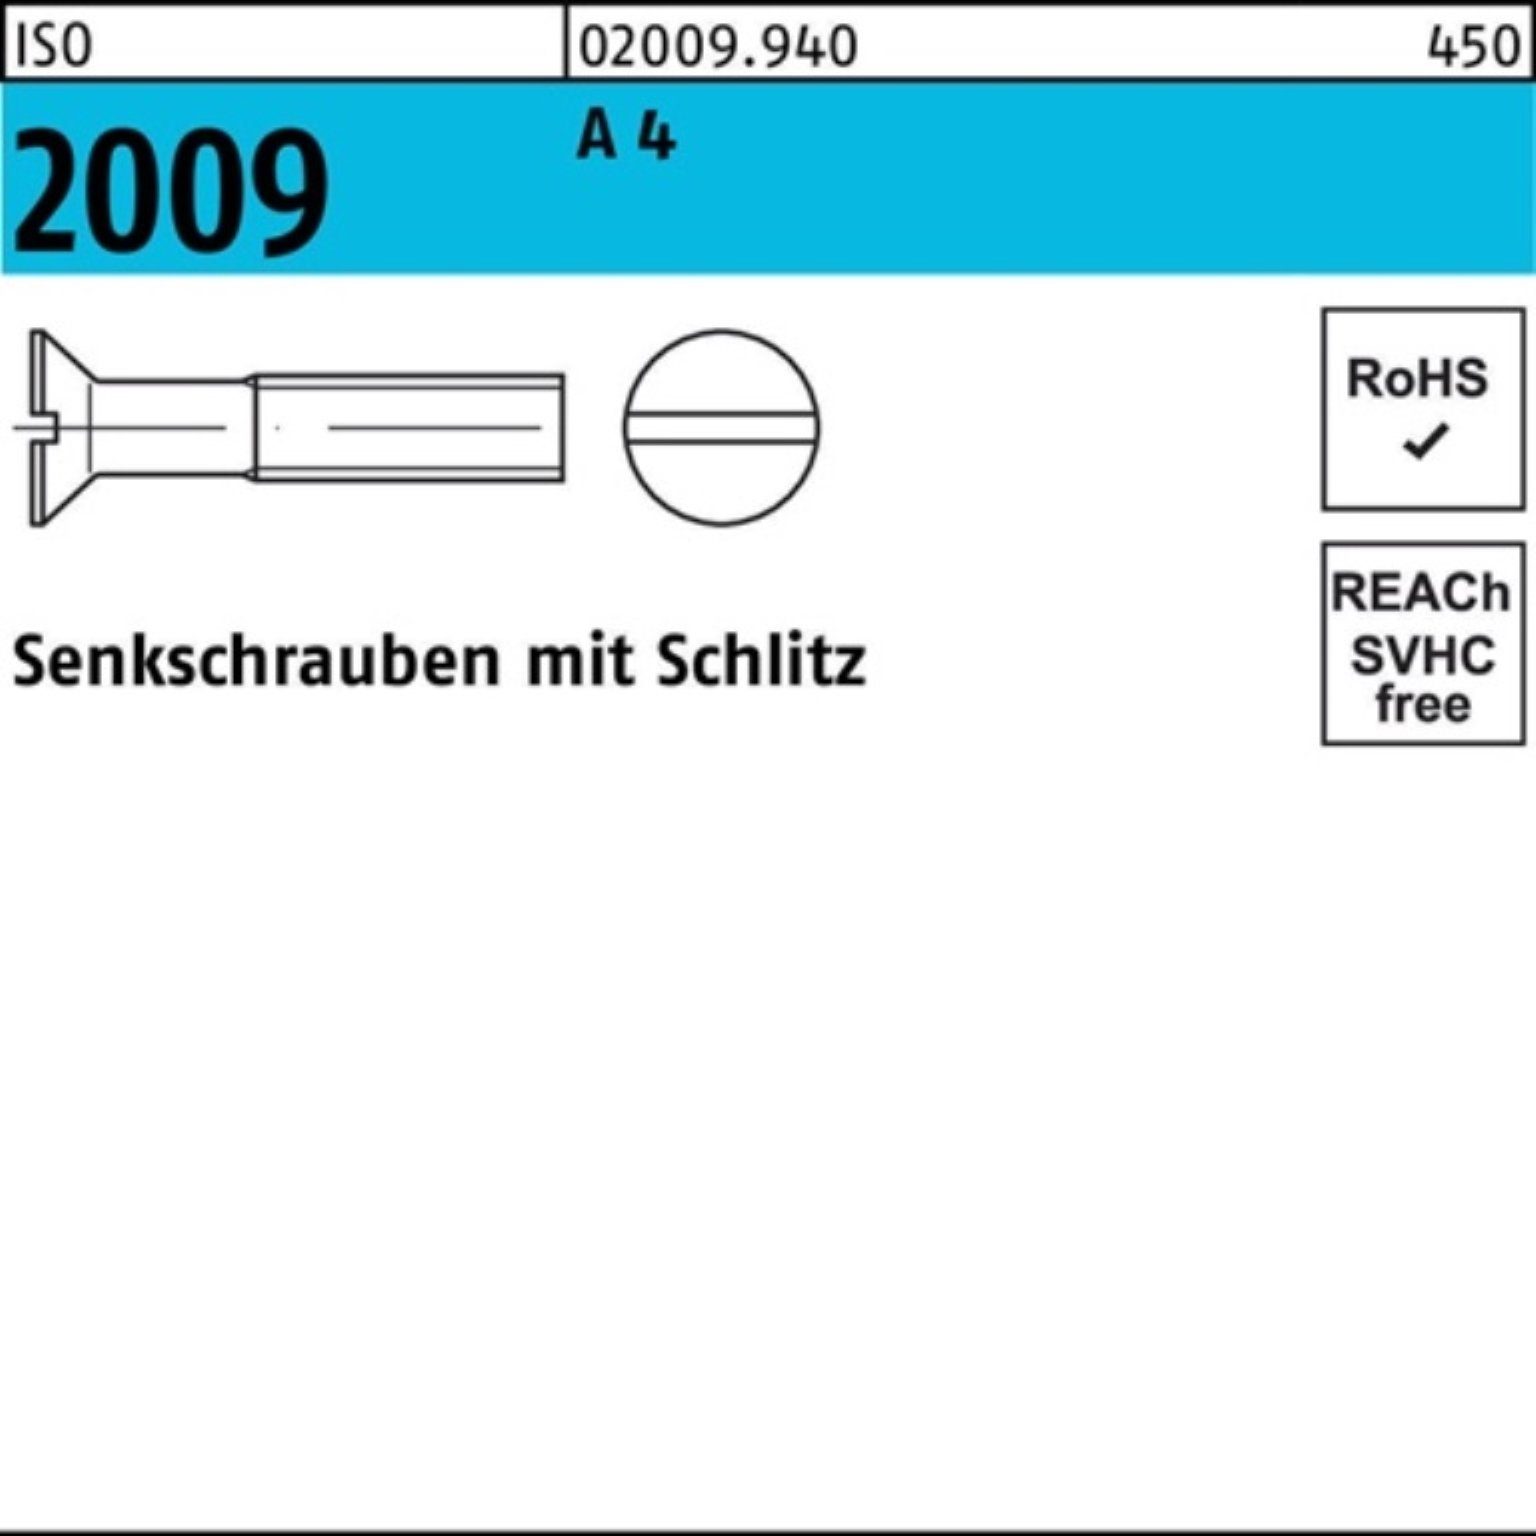 Reyher Senkschraube 100er Pack M6x 2009 ISO Stück ISO 50 Senkschraube 120 Schlitz 4 200 A